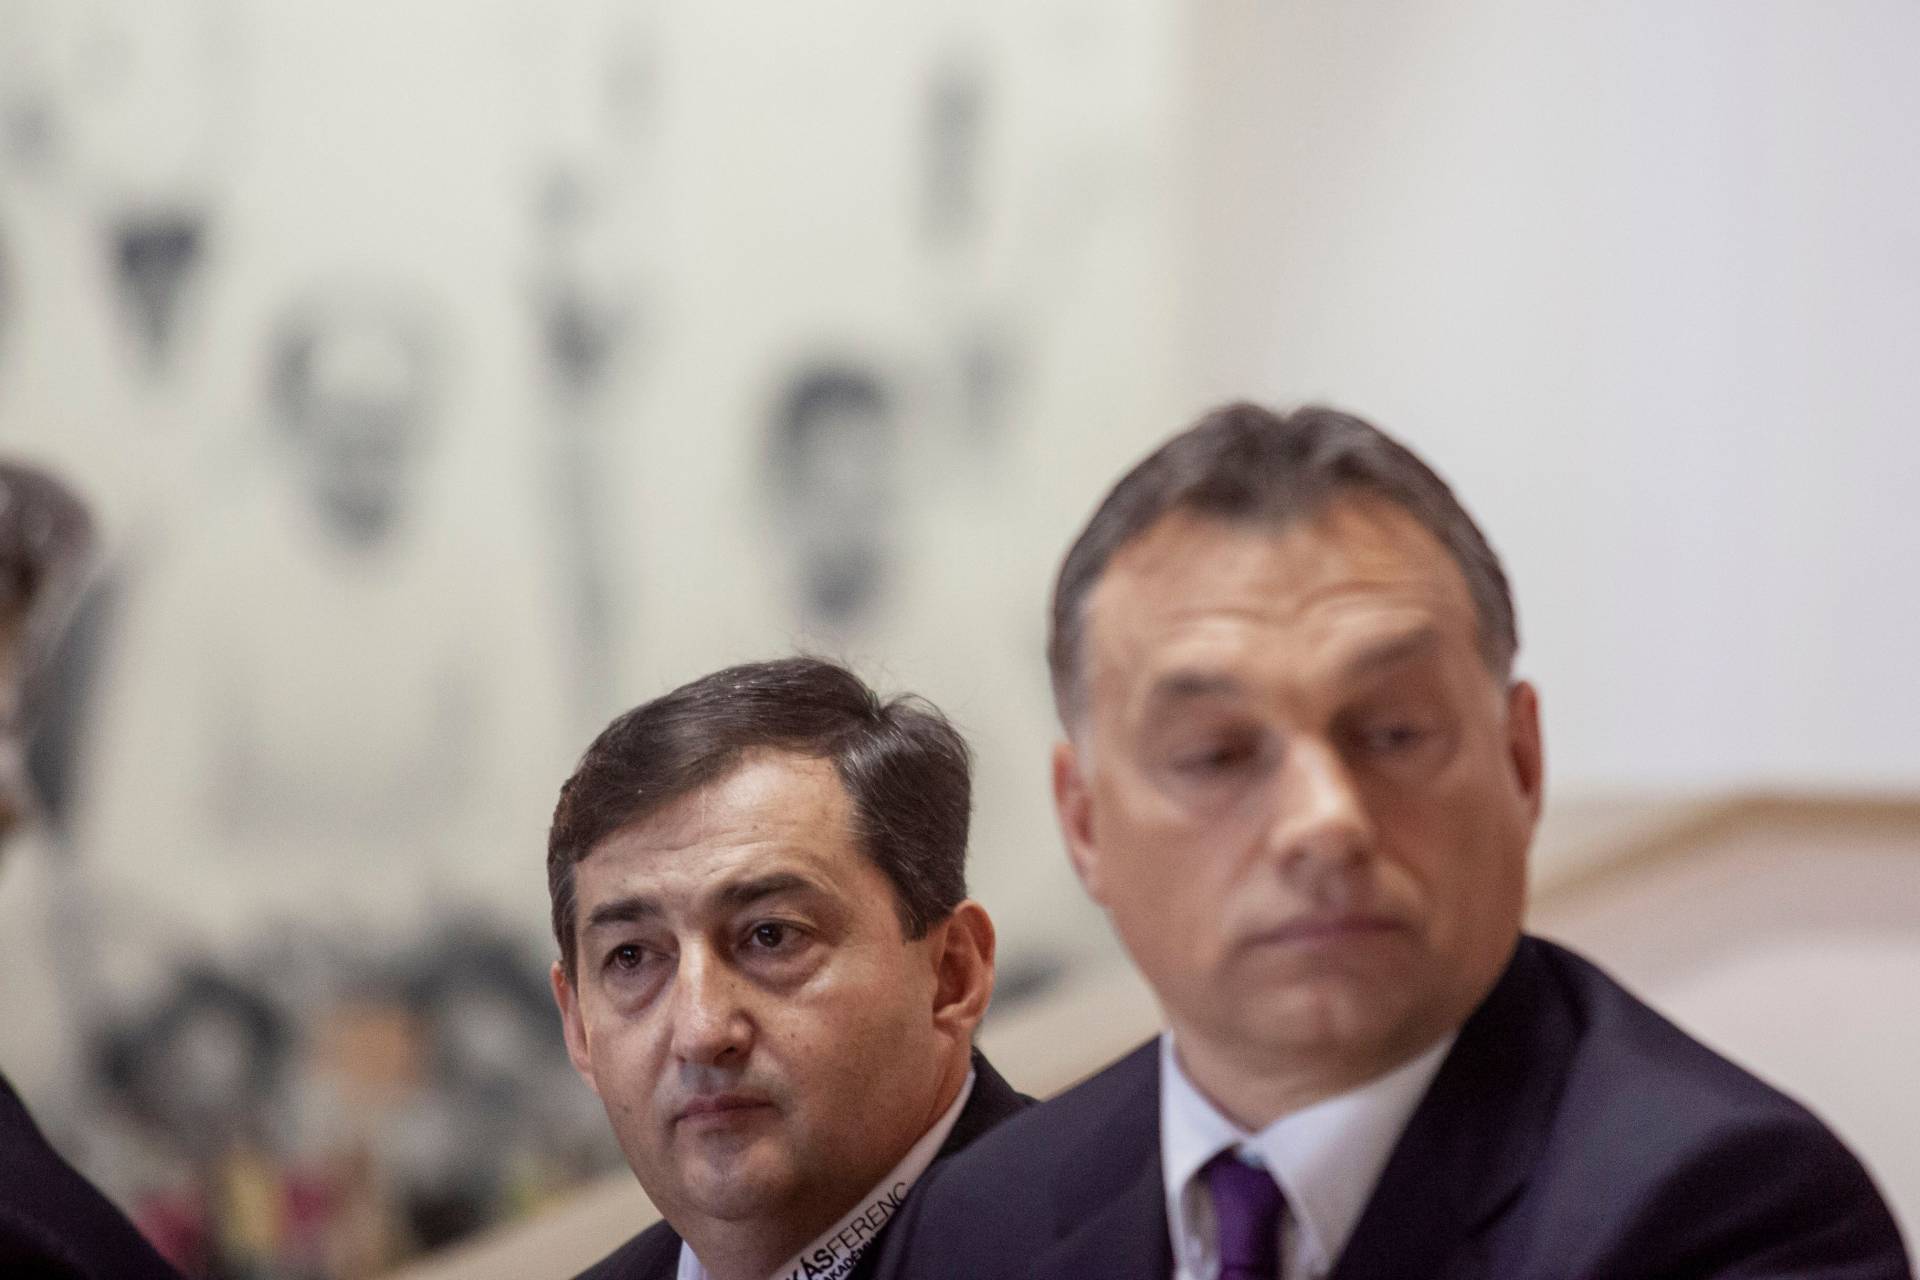 Mészáros Lőrinc, Orbán Viktor